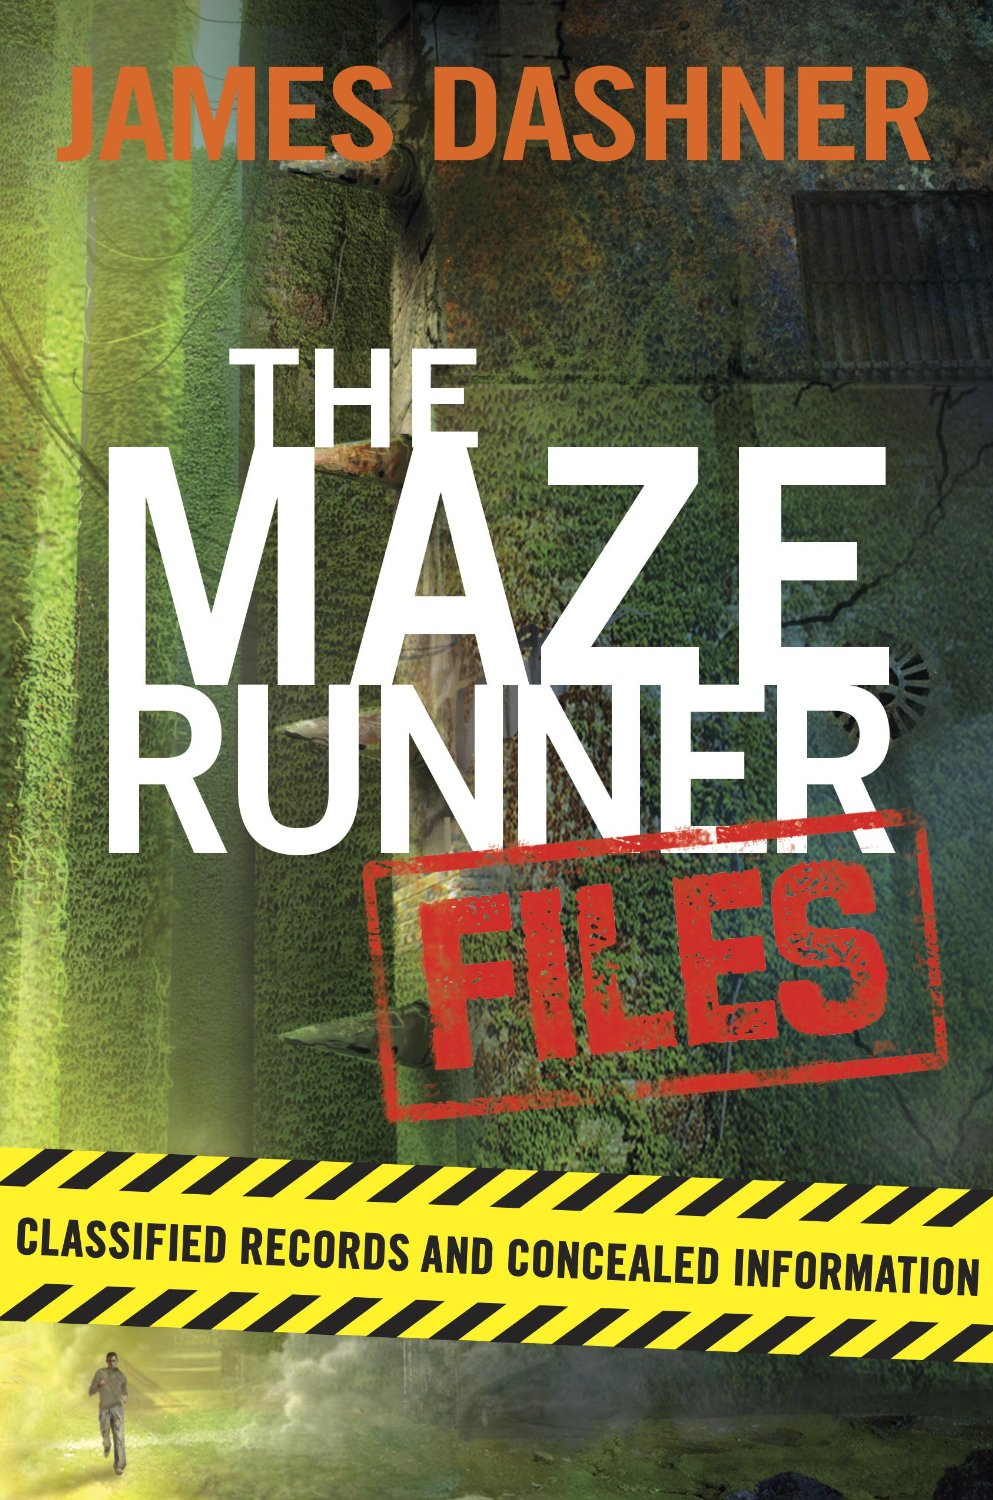 The Maze Runner' proves better than book